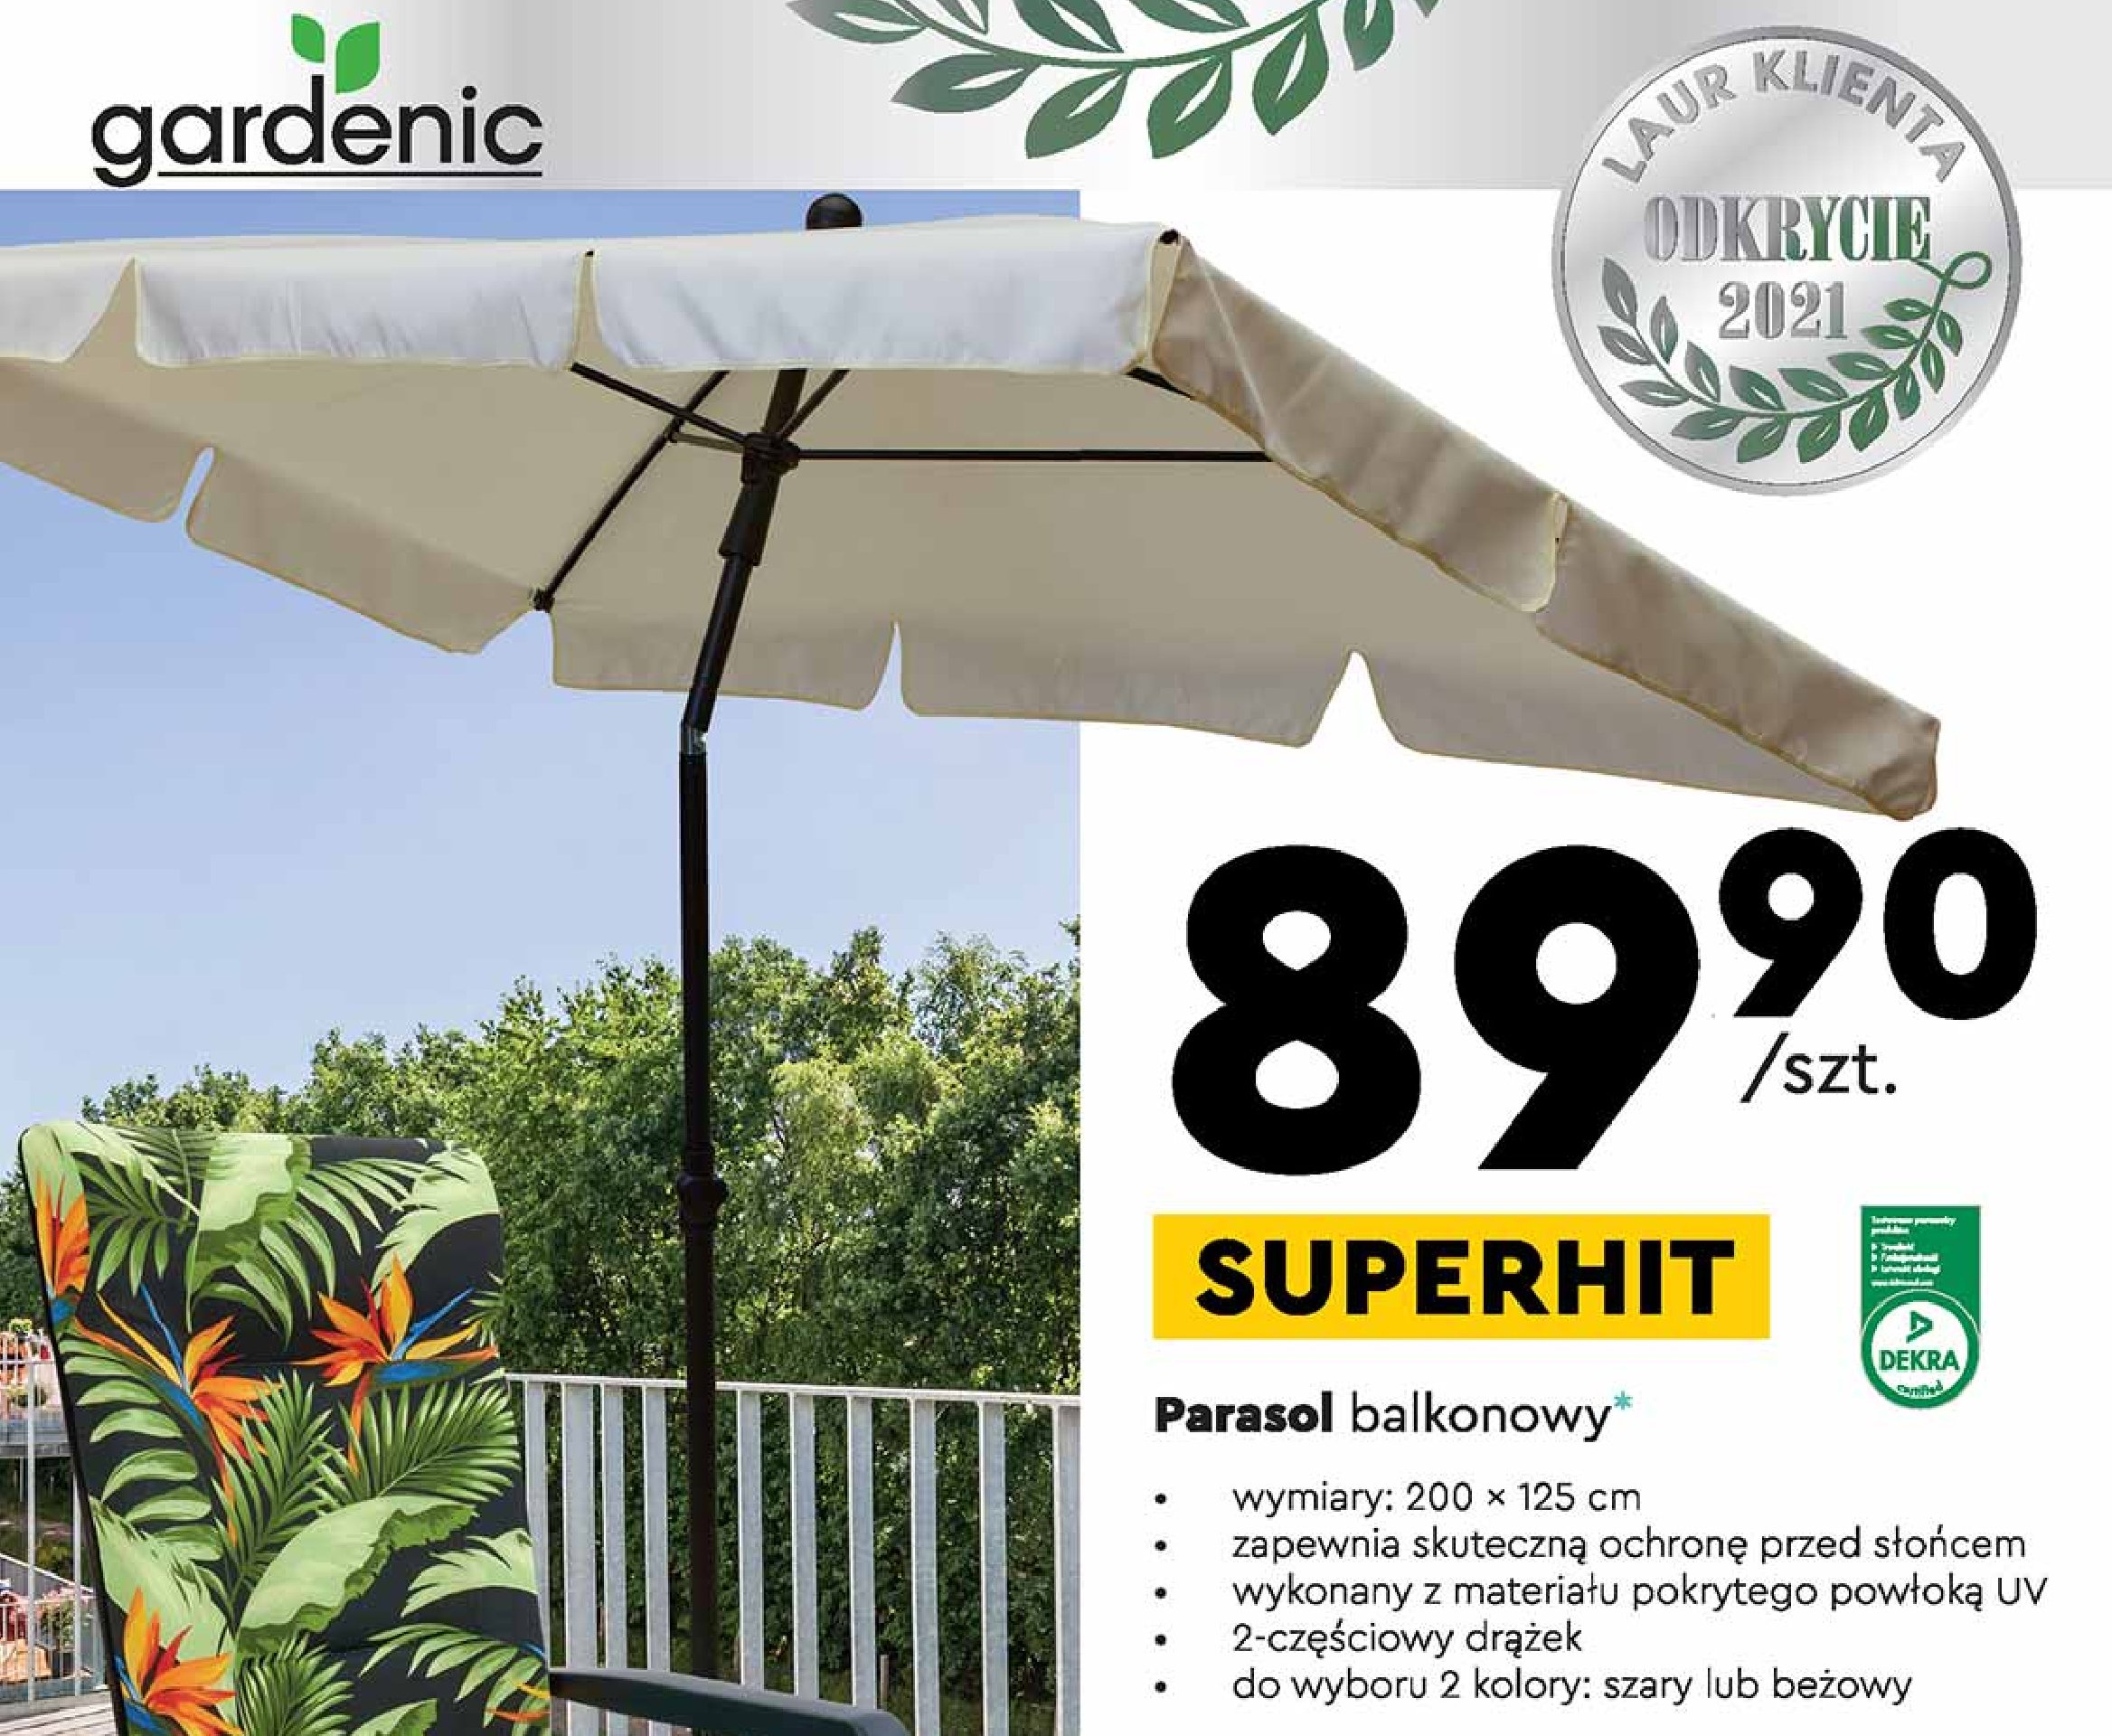 Parasol balkonowy 200 x 125 cm Gardenic promocje